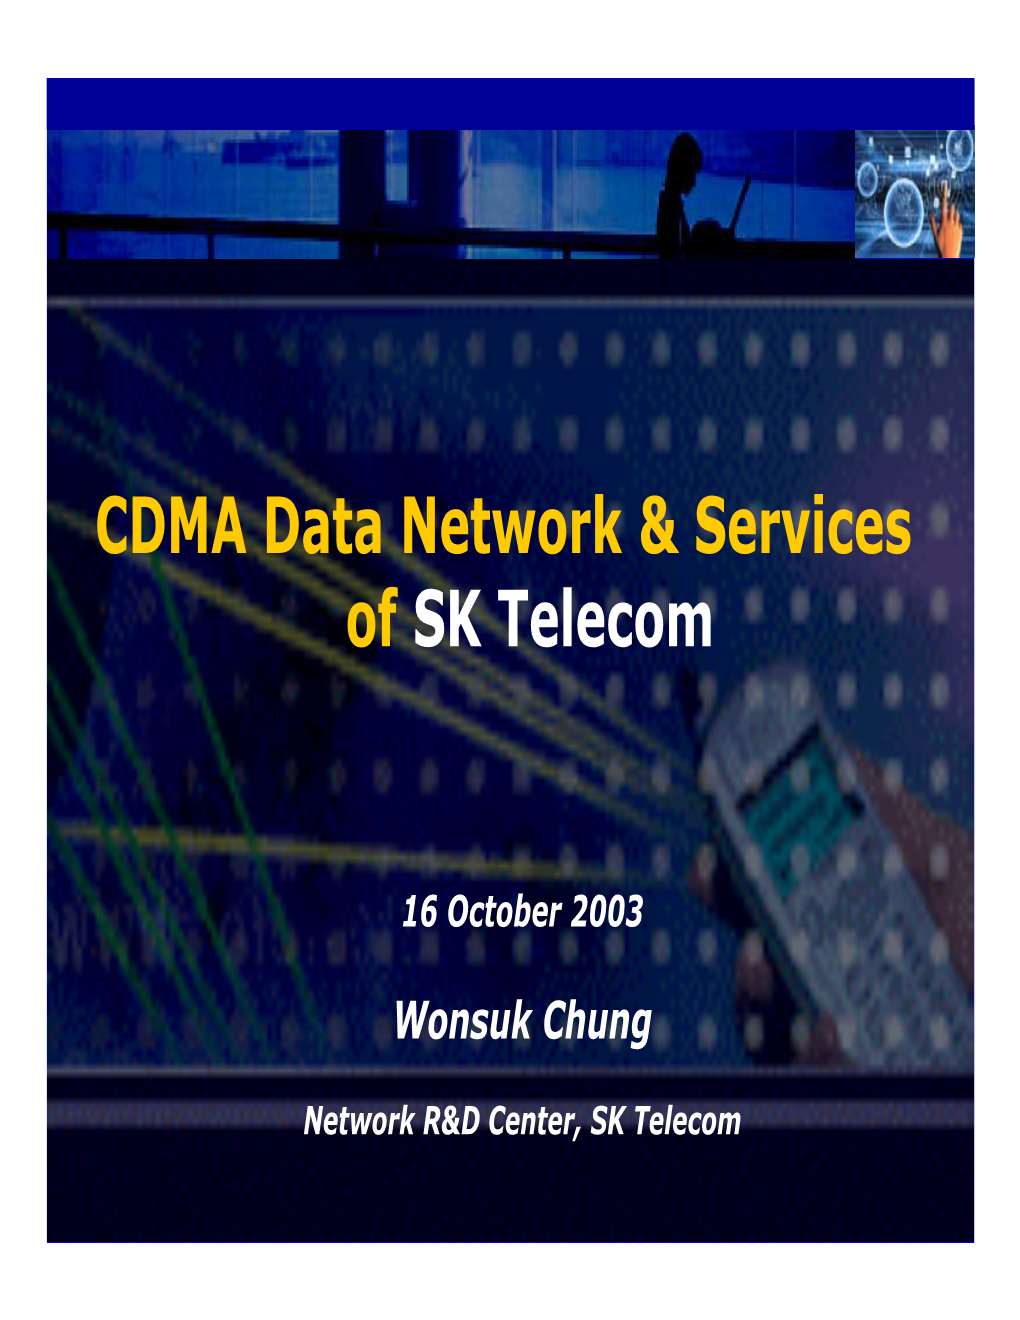 CDMA Data Network & Services of SK Telecom